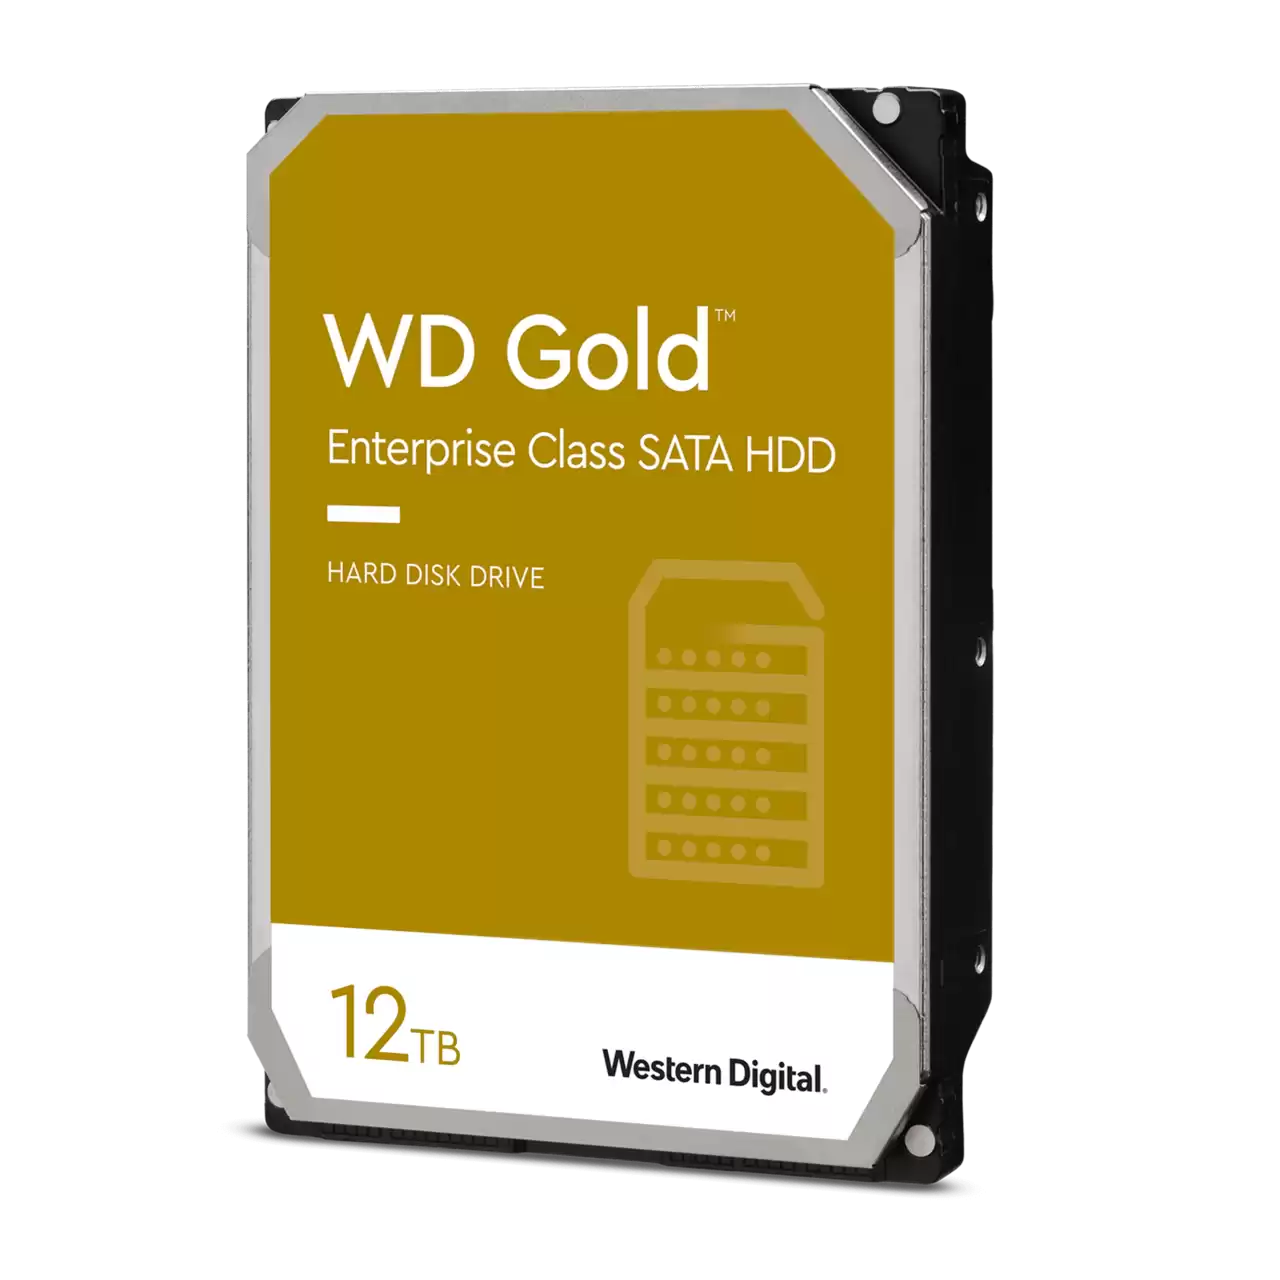 هارد دیسک اینترنال وسترن دیجیتال مدل Western Digital WD Gold Enterprise Class SATA HDD ظرفیت 12 ترابایت